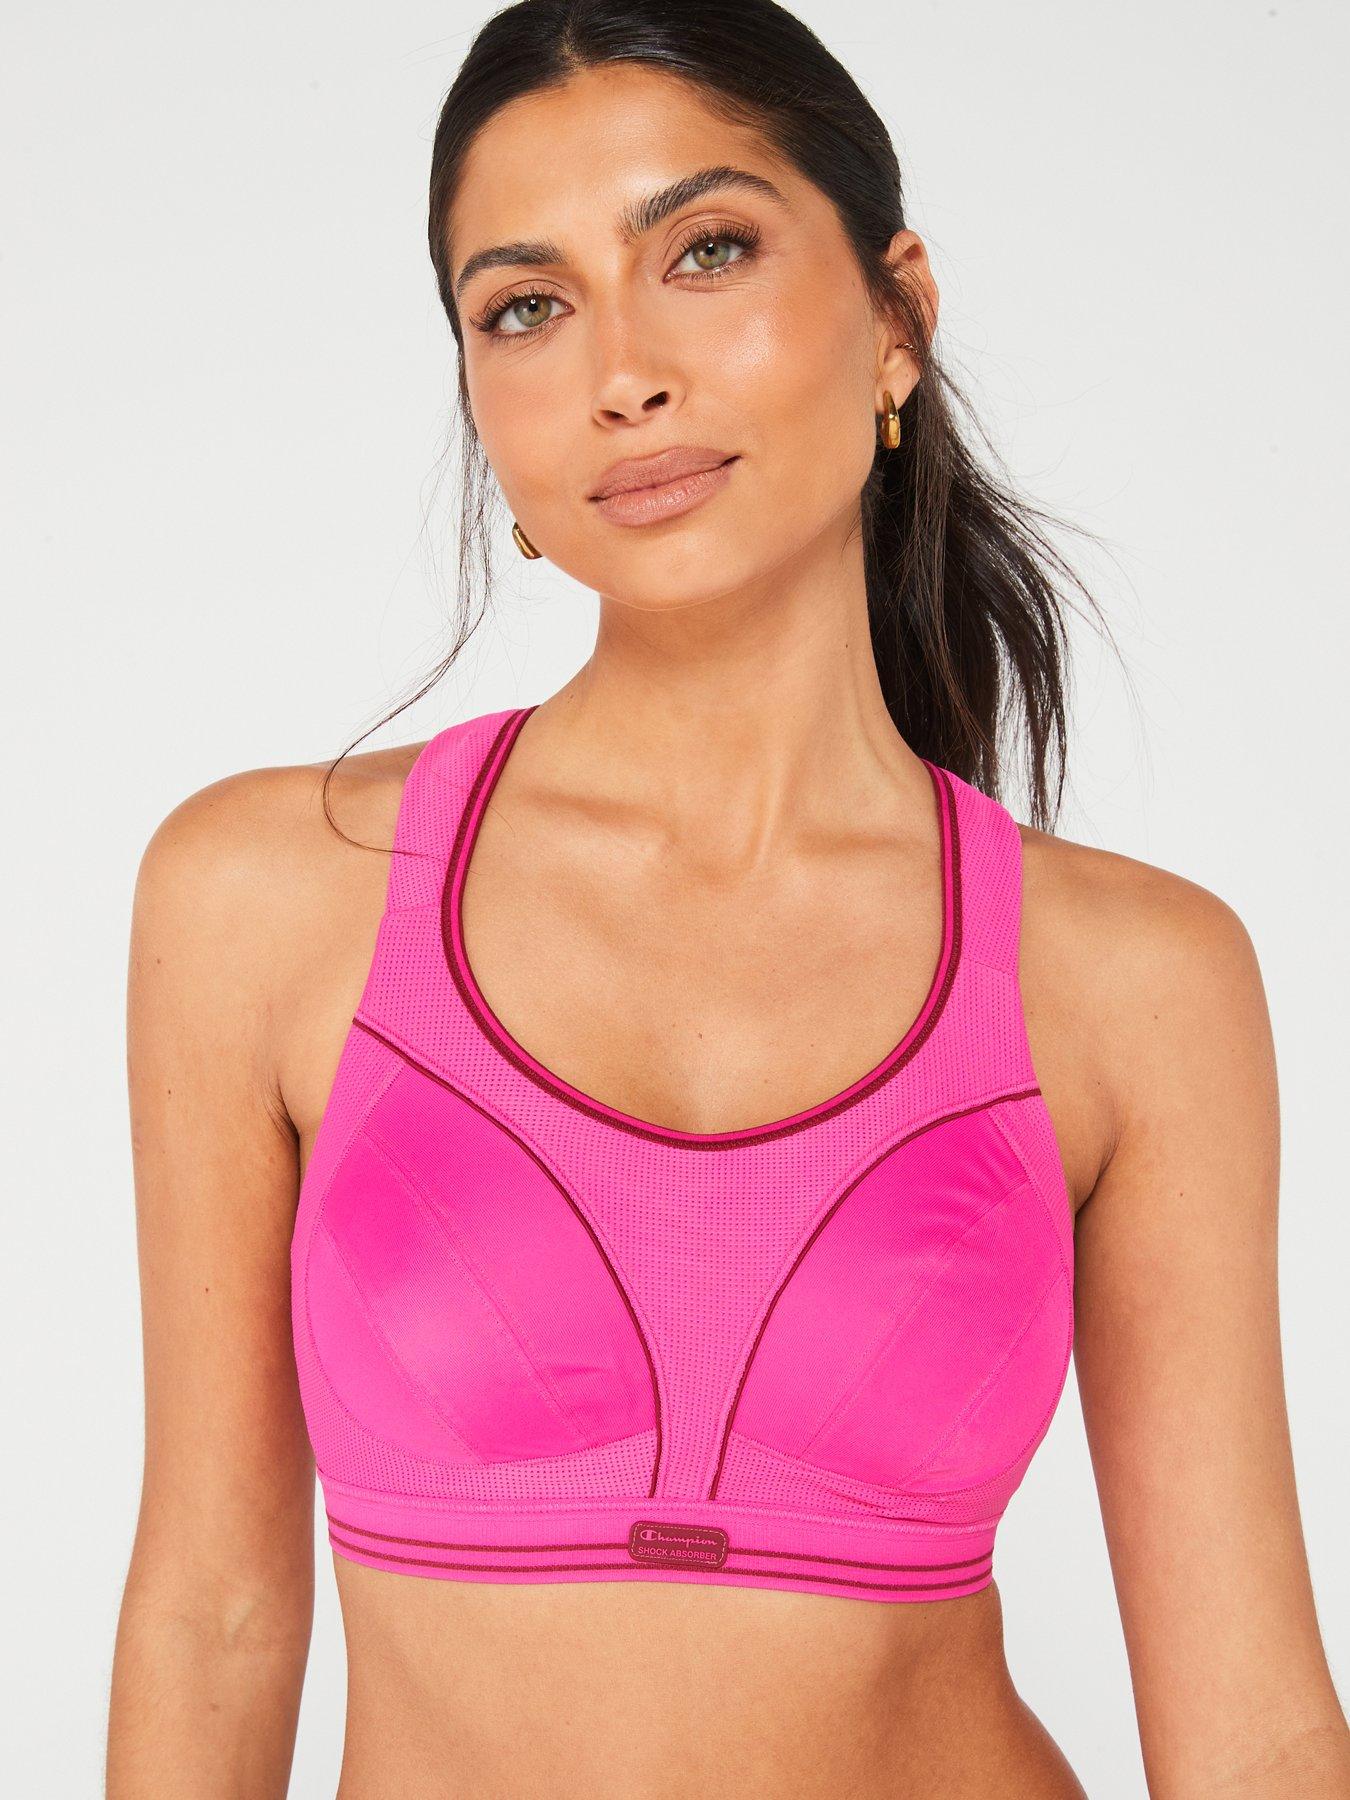 Pink Sports Bras, Women's Sportswear